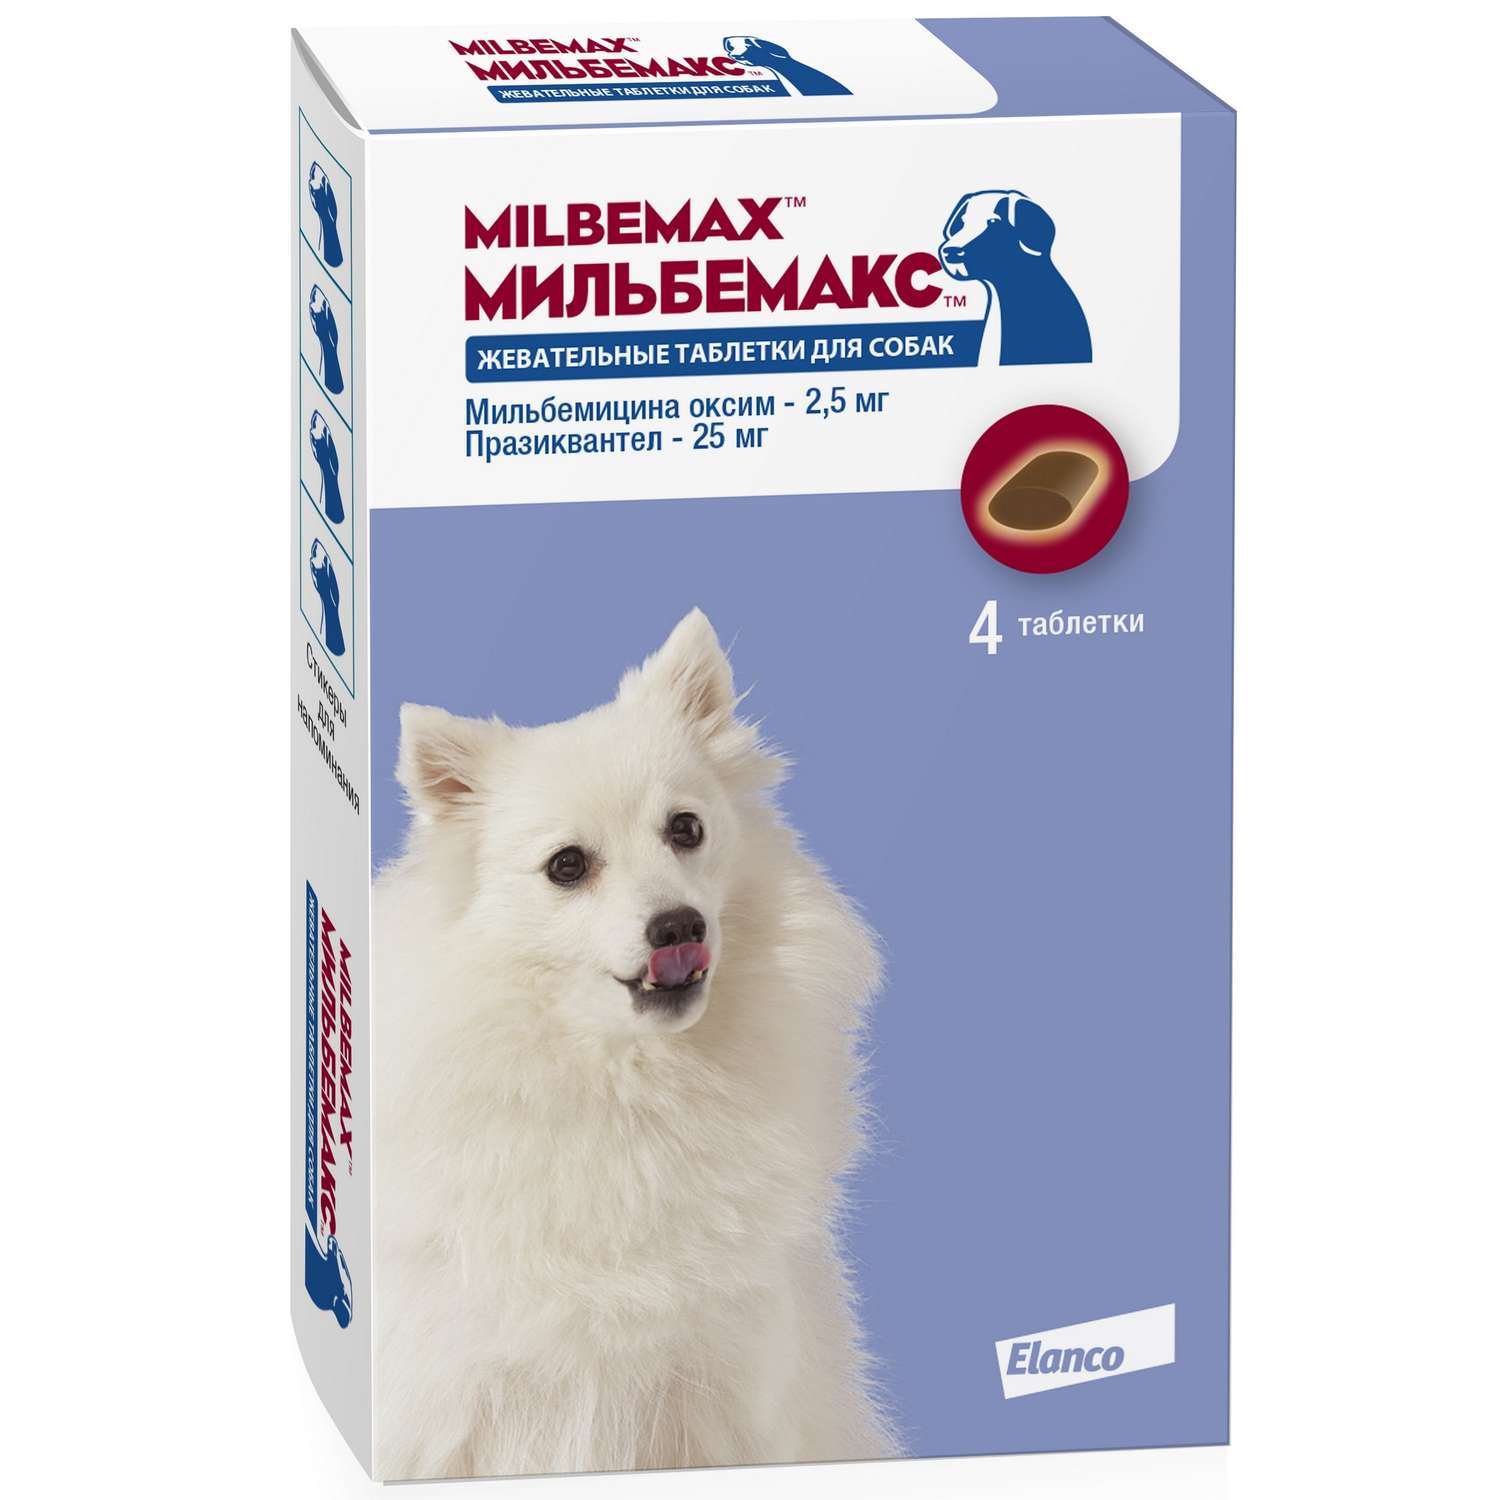 Антигельминтикик для щенков и собак Elanco Мильбемакс 2.5/25мг 4таблетки - фото 1